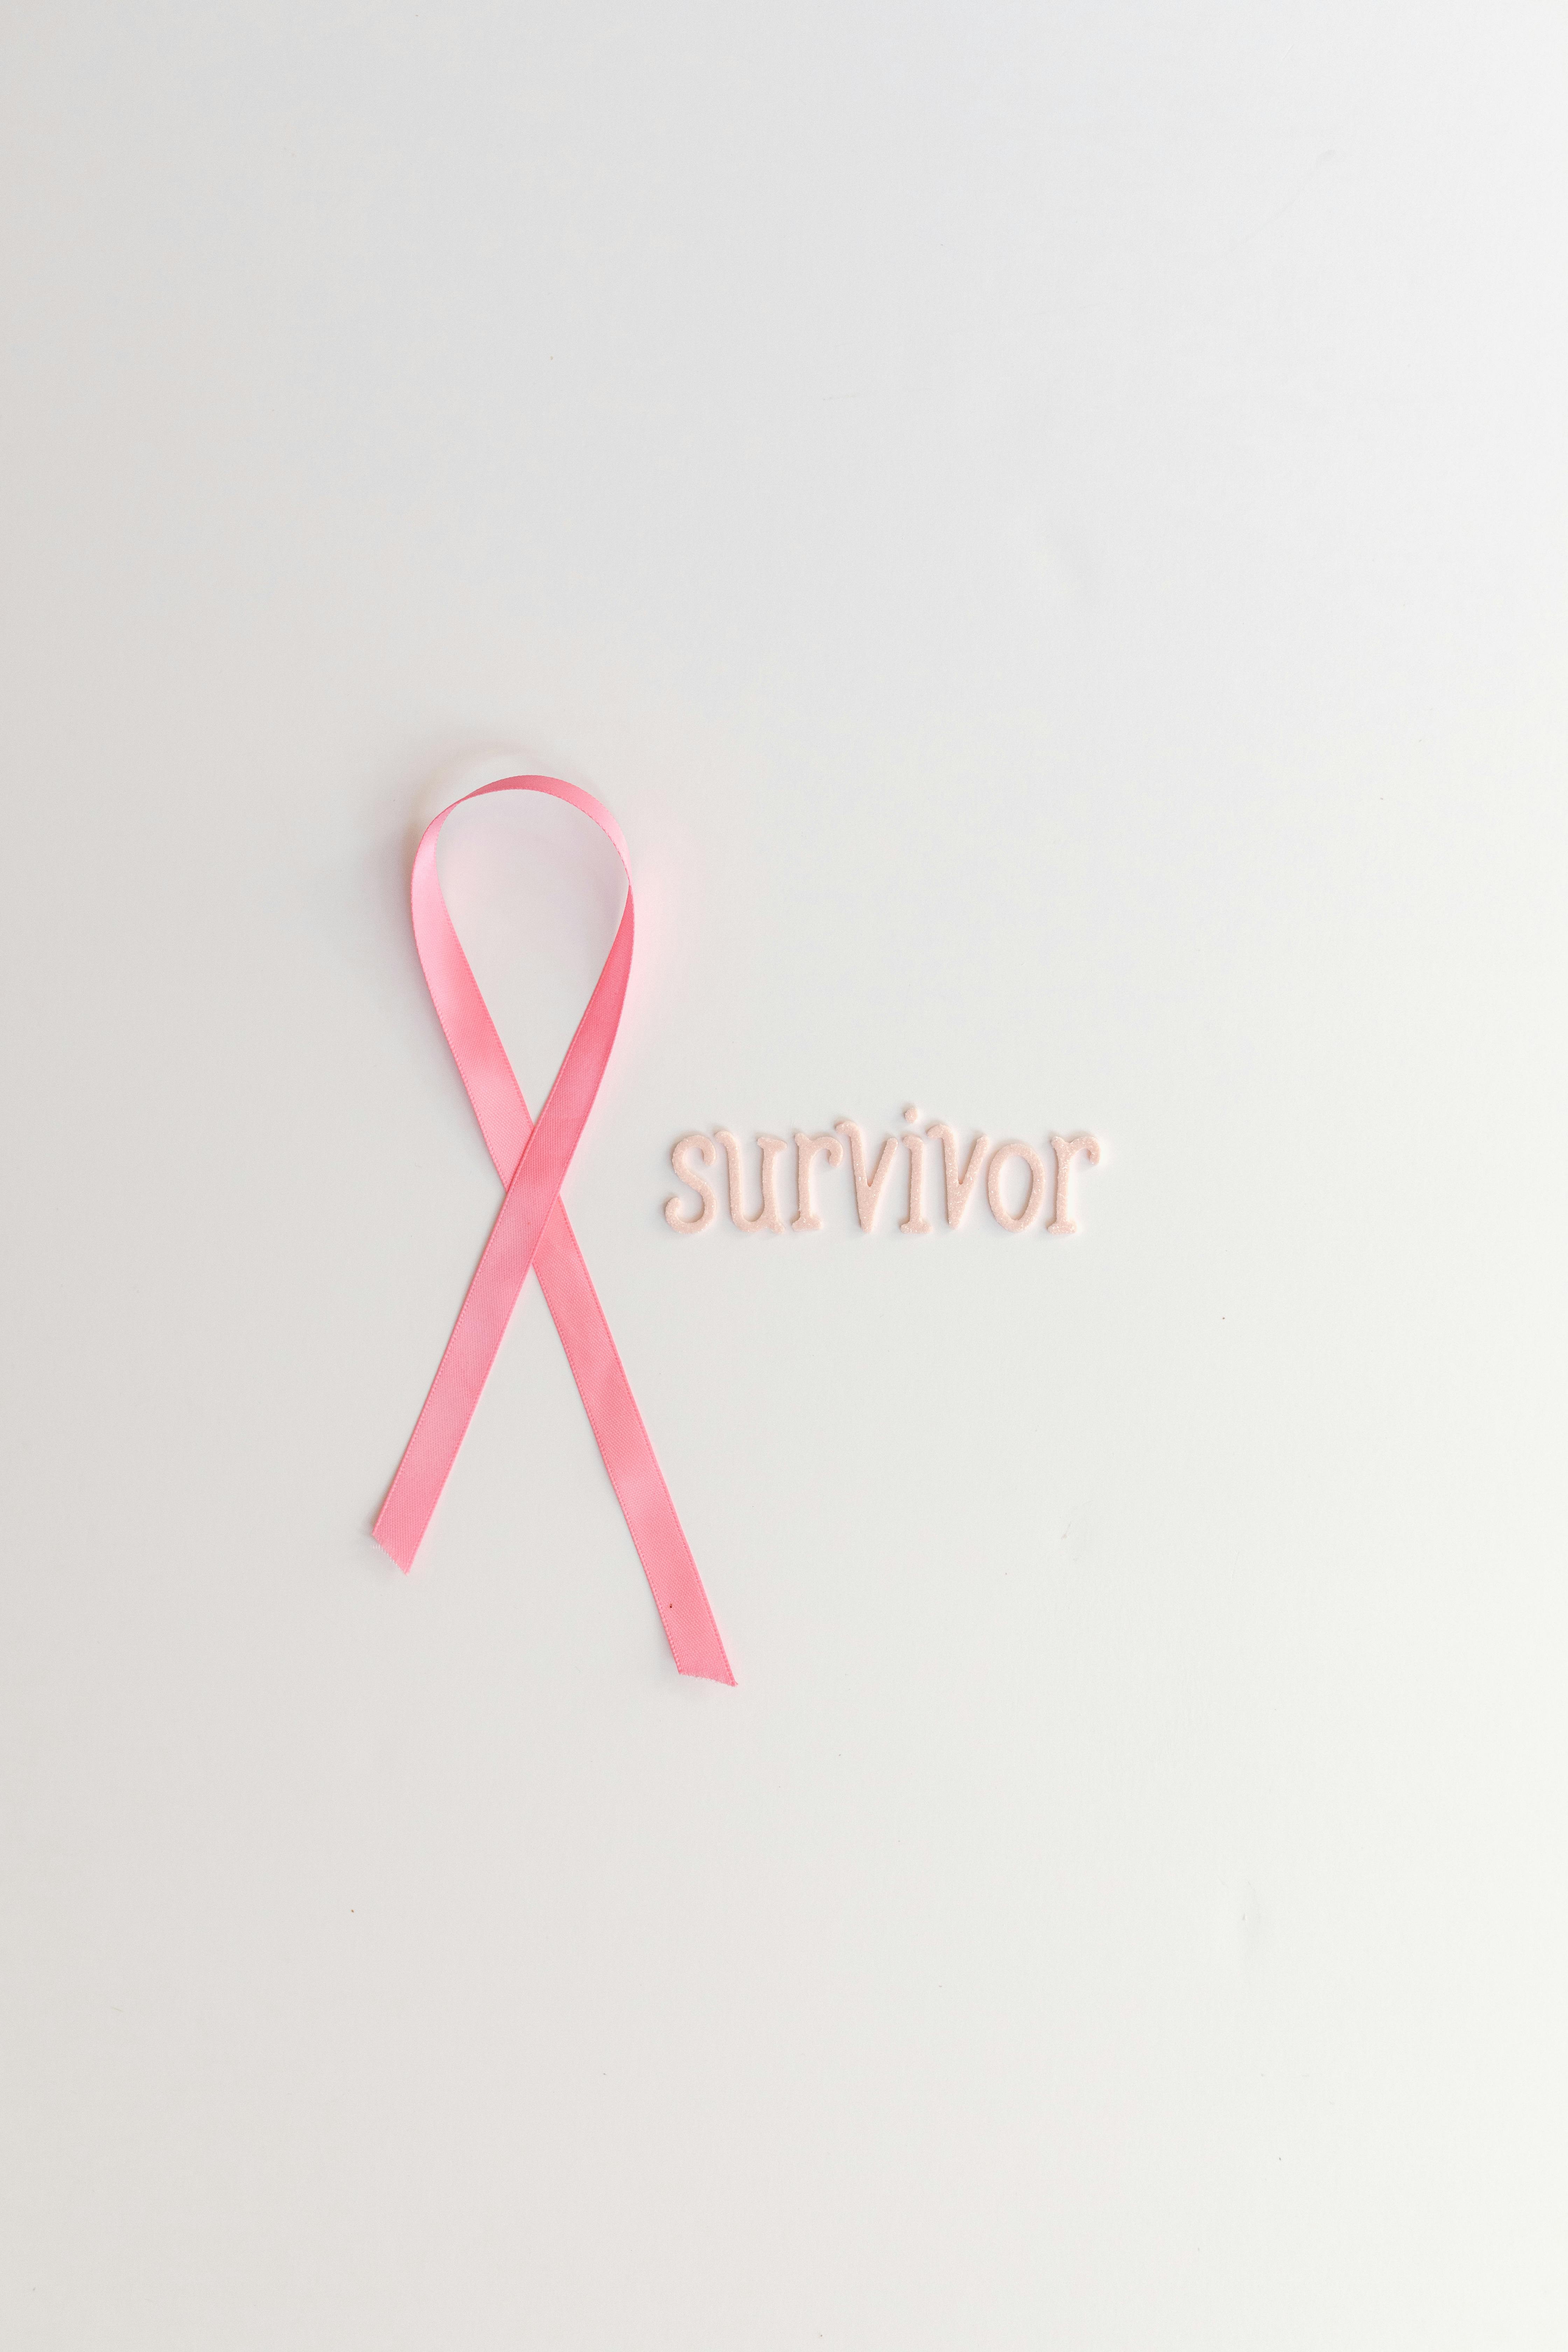 Breast cancer pink flower doodle background Vector Image